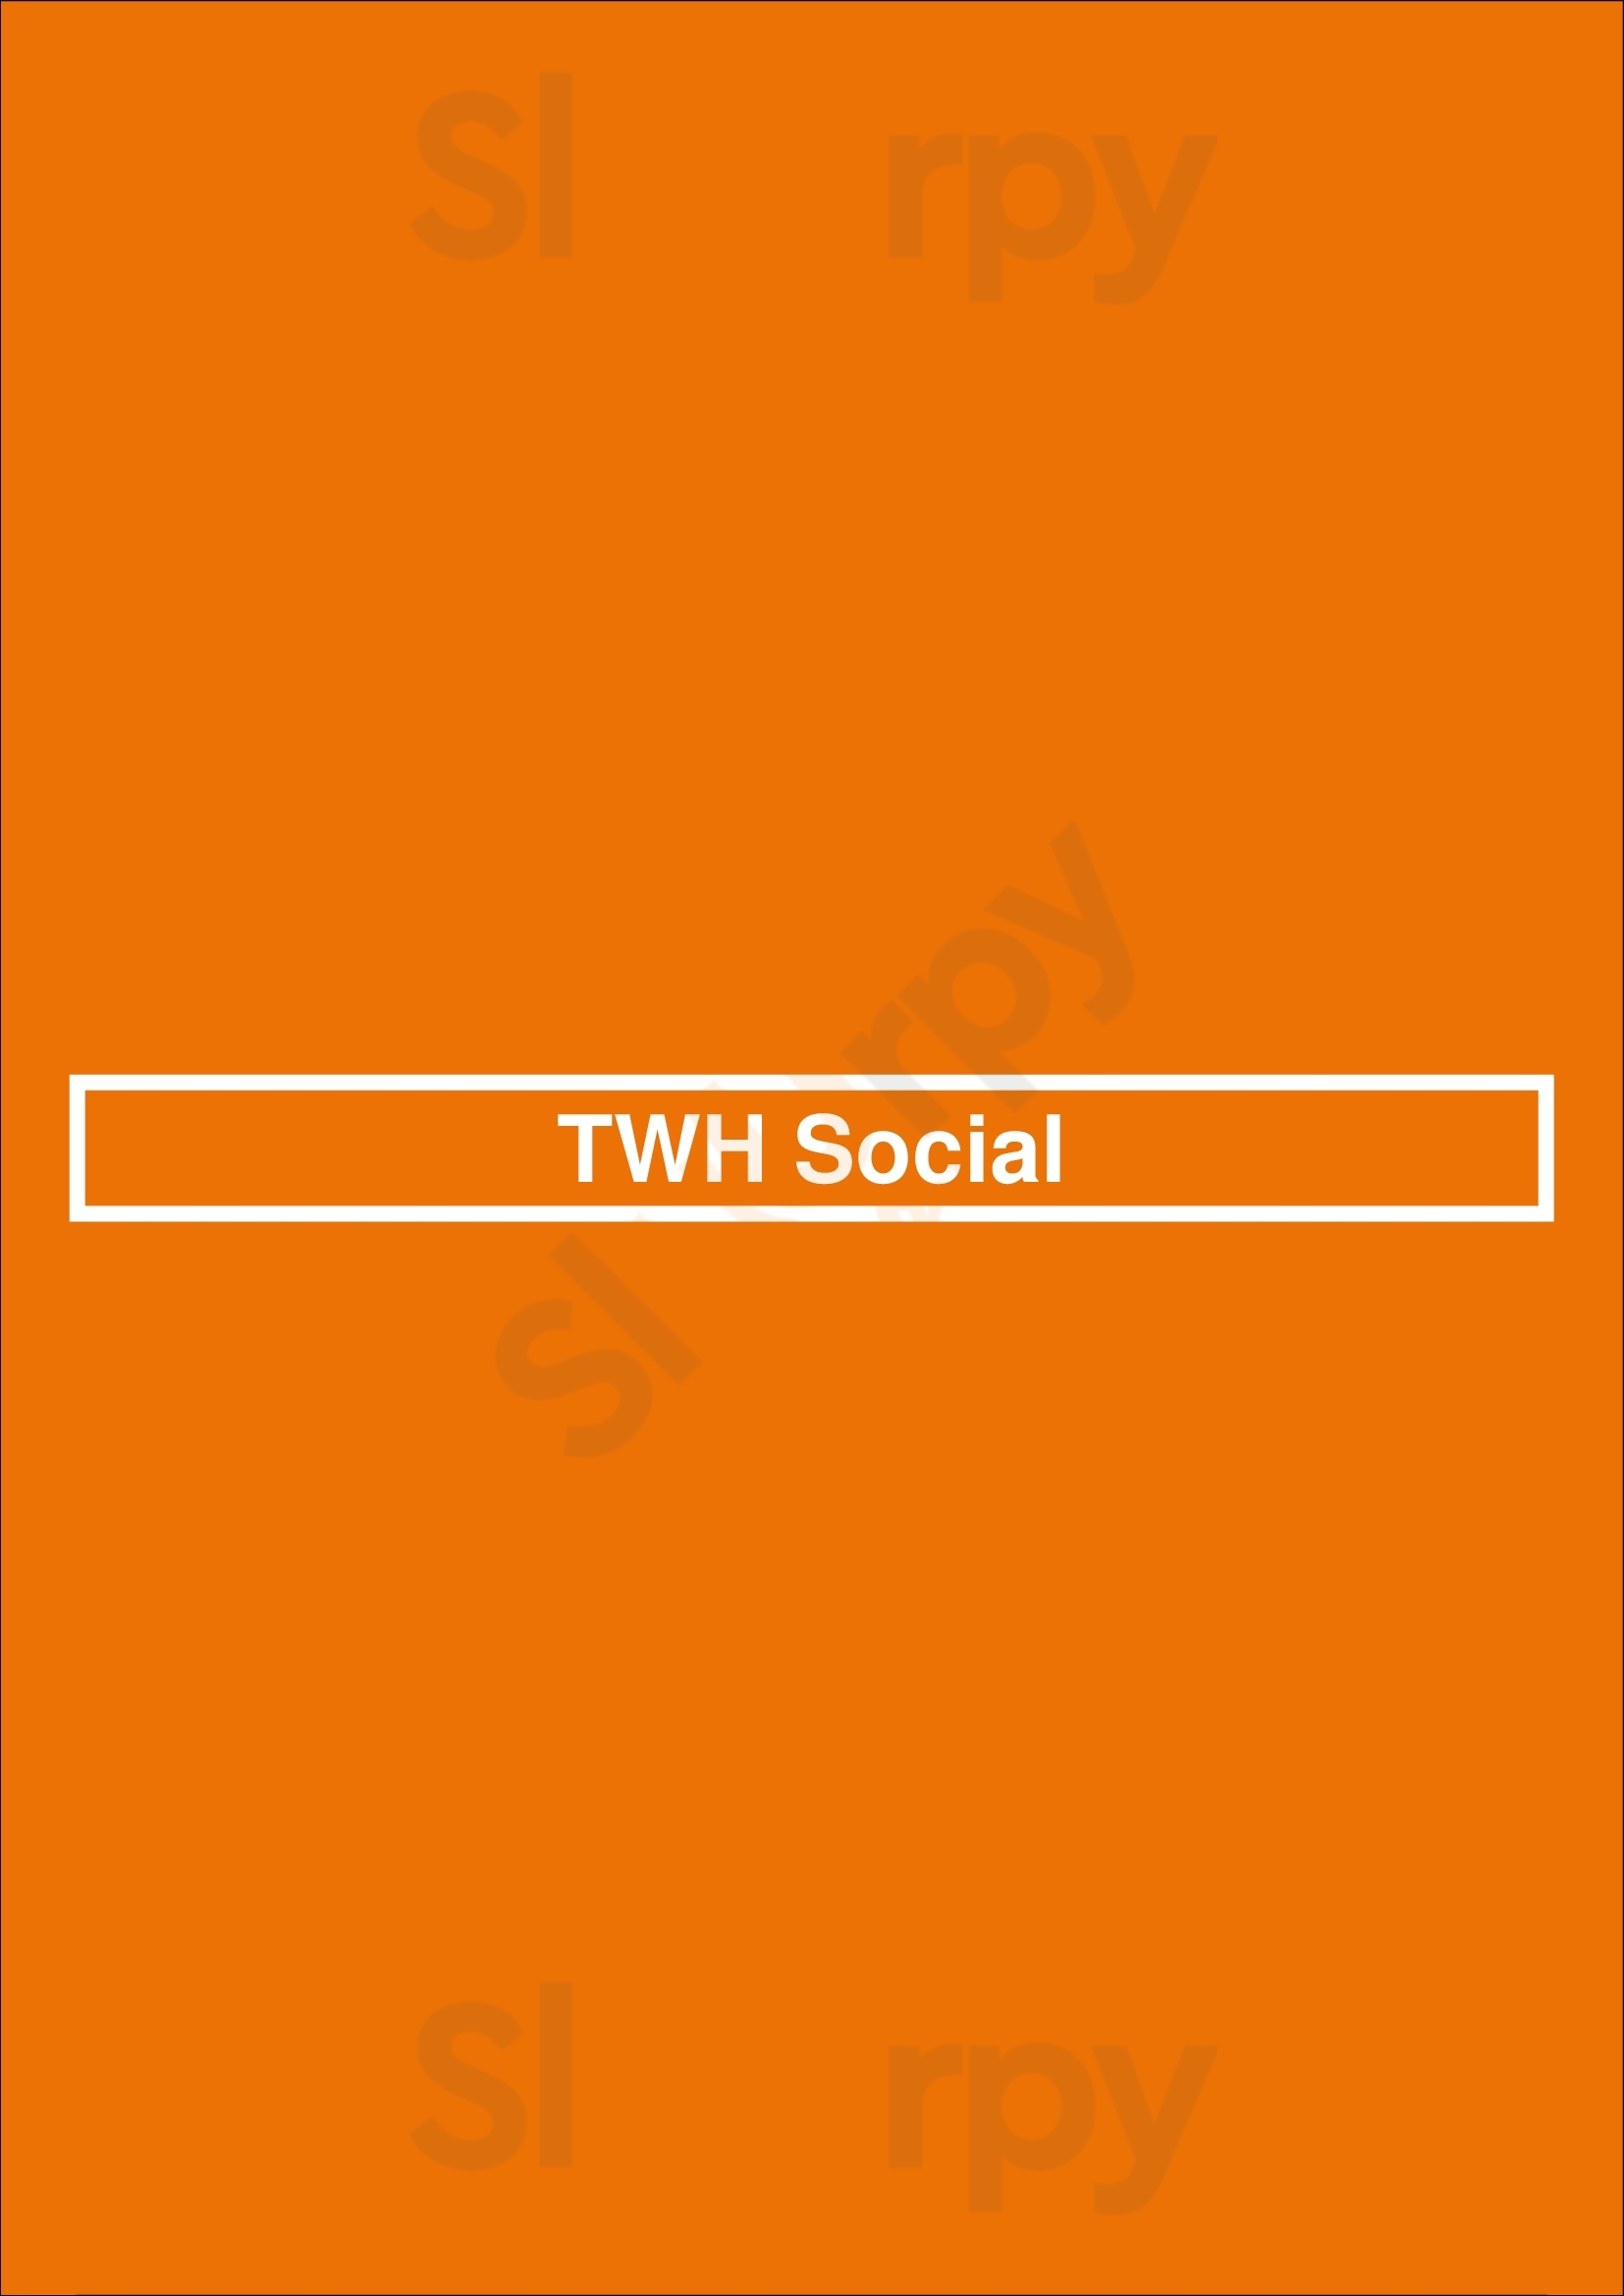 Twh Social Kitchener Menu - 1